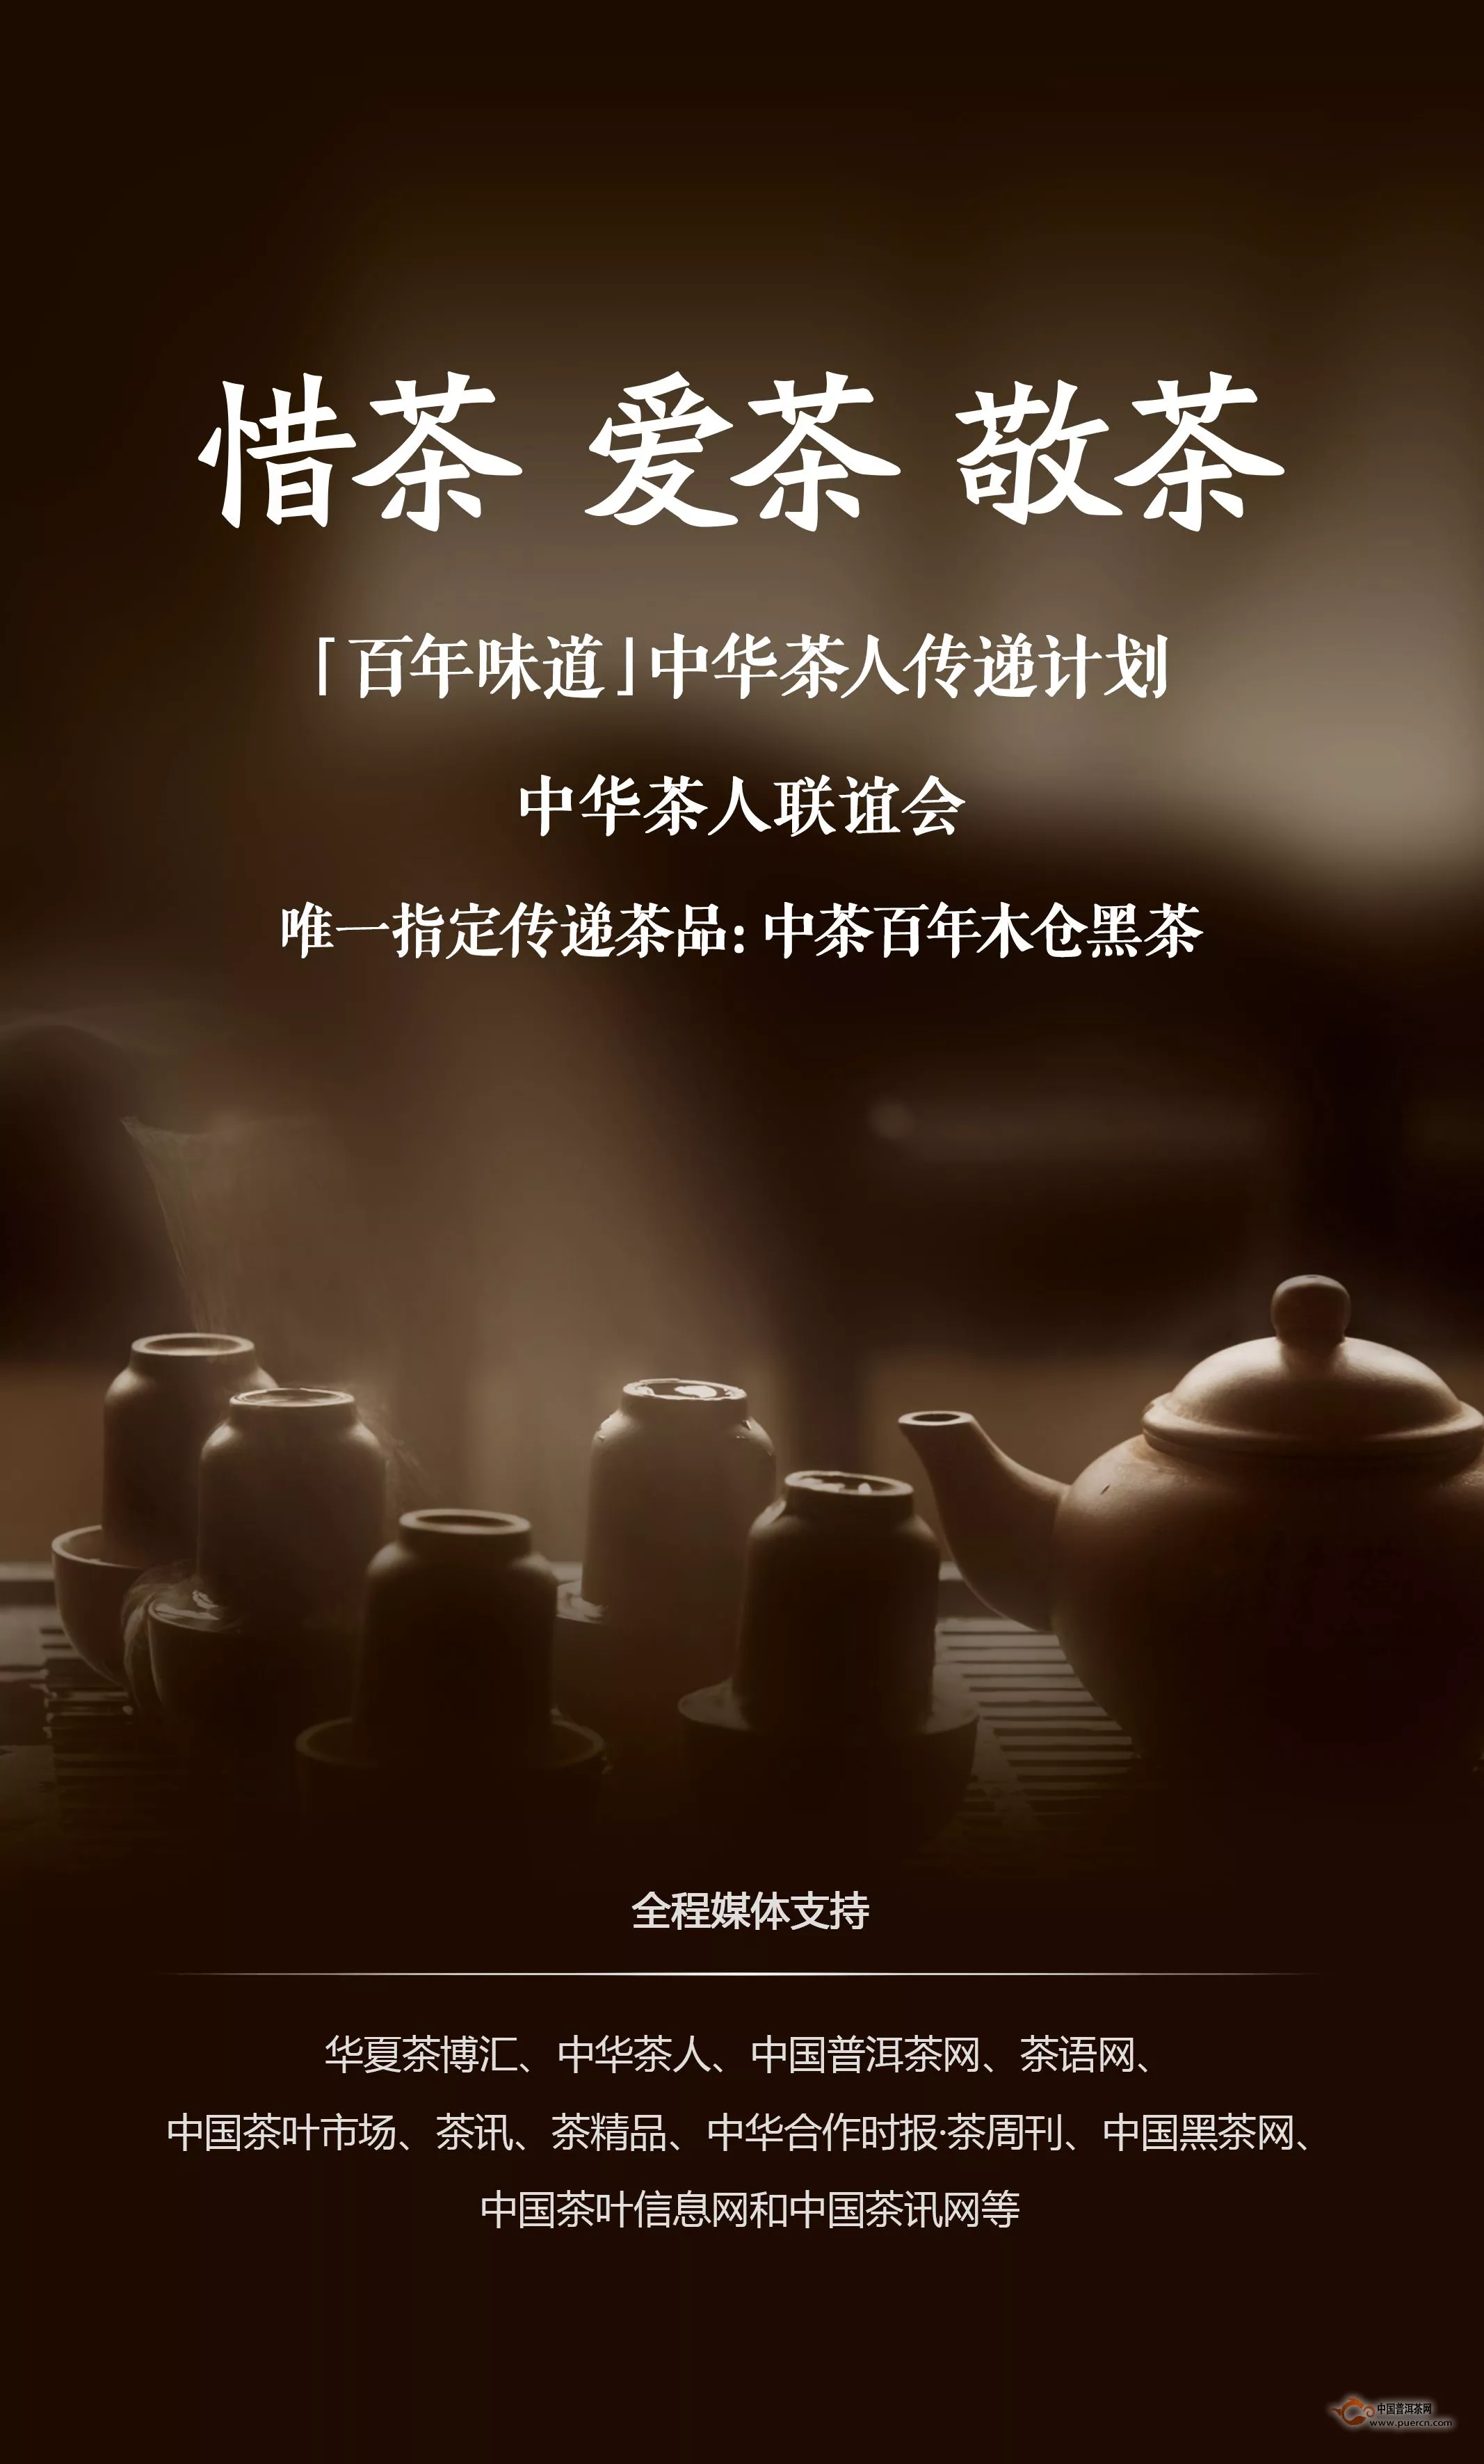 【百年味道】中华茶人传递计划